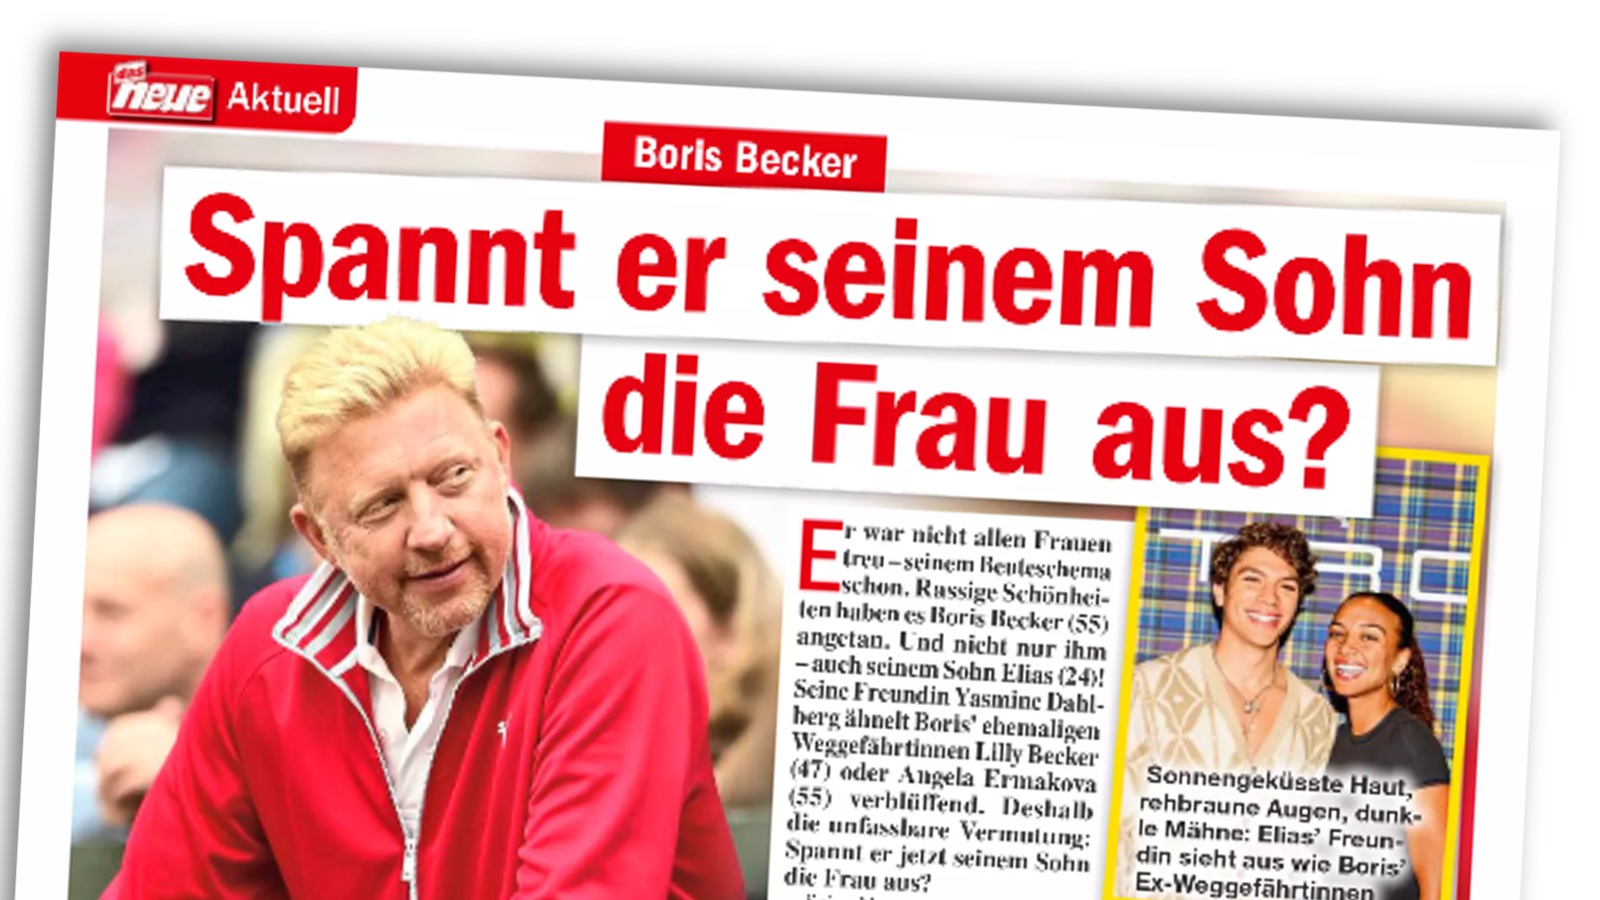 Text über Boris Becker aus dem Magazin "das neue" des Bauer-Verlags mit der Überschrift: "Spannt er seinem Sohn die Frau aus?"